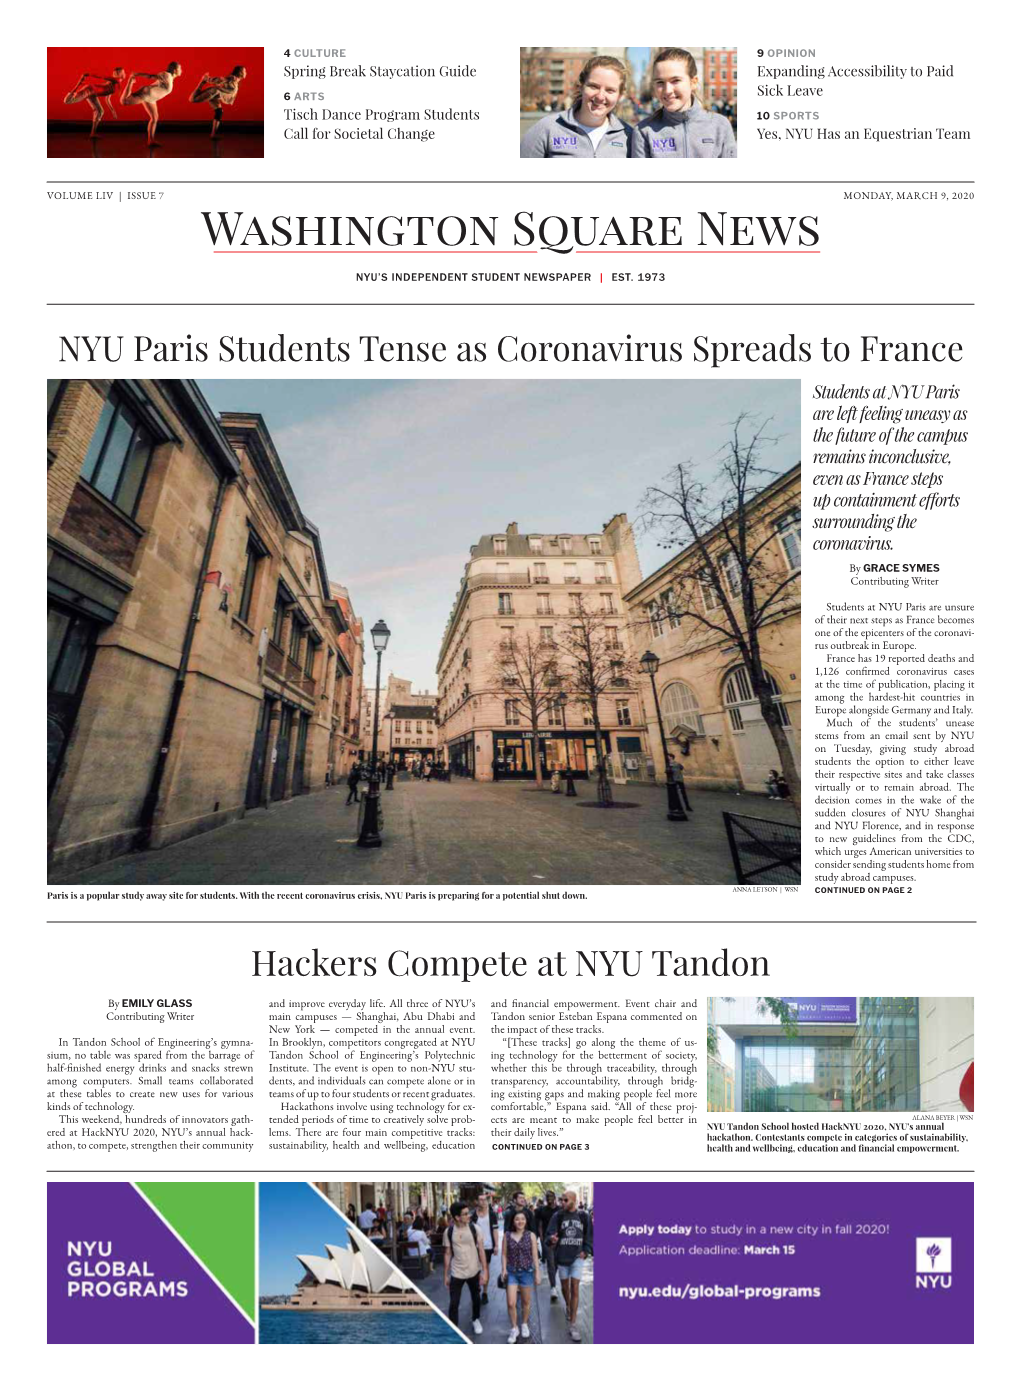 Hackers Compete at NYU Tandon NYU Paris Students Tense As